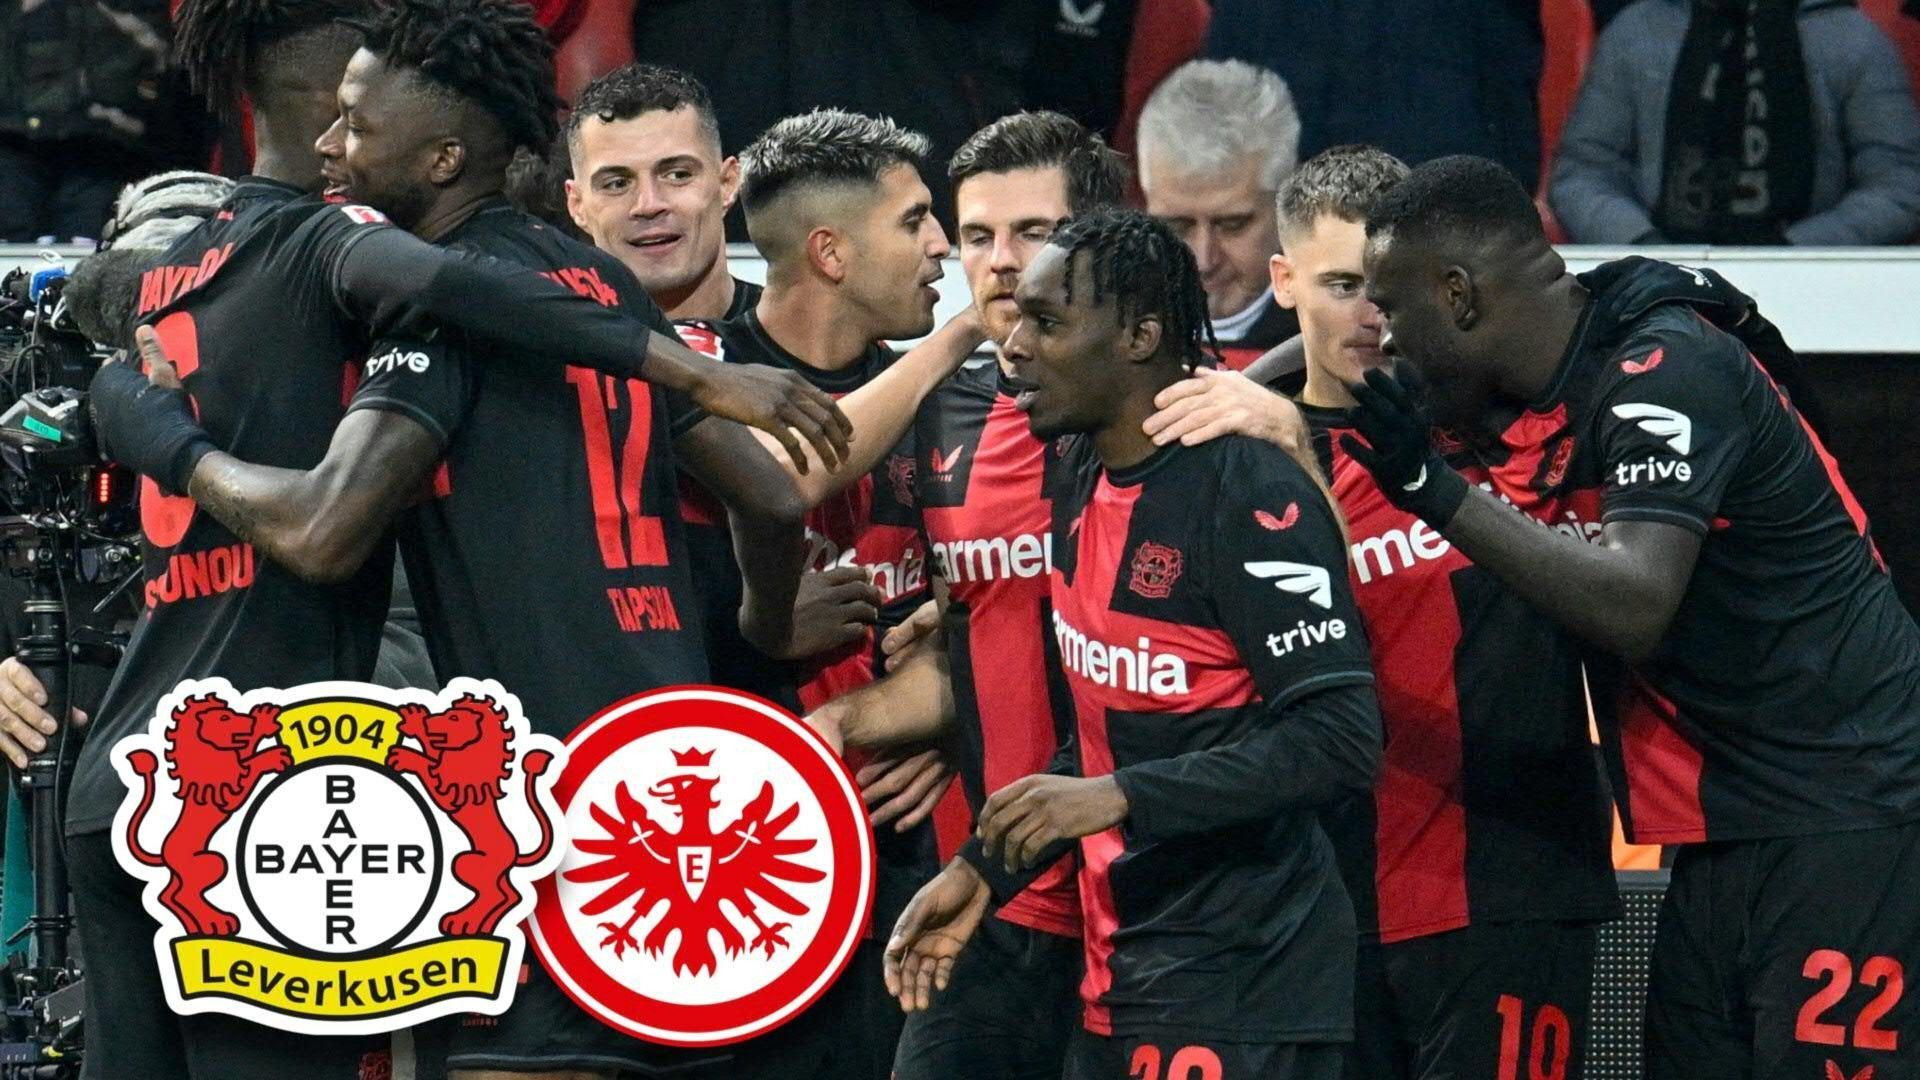 Souverän gegen Frankfurt: Leverkusen ist "Weihnachtsmeister"